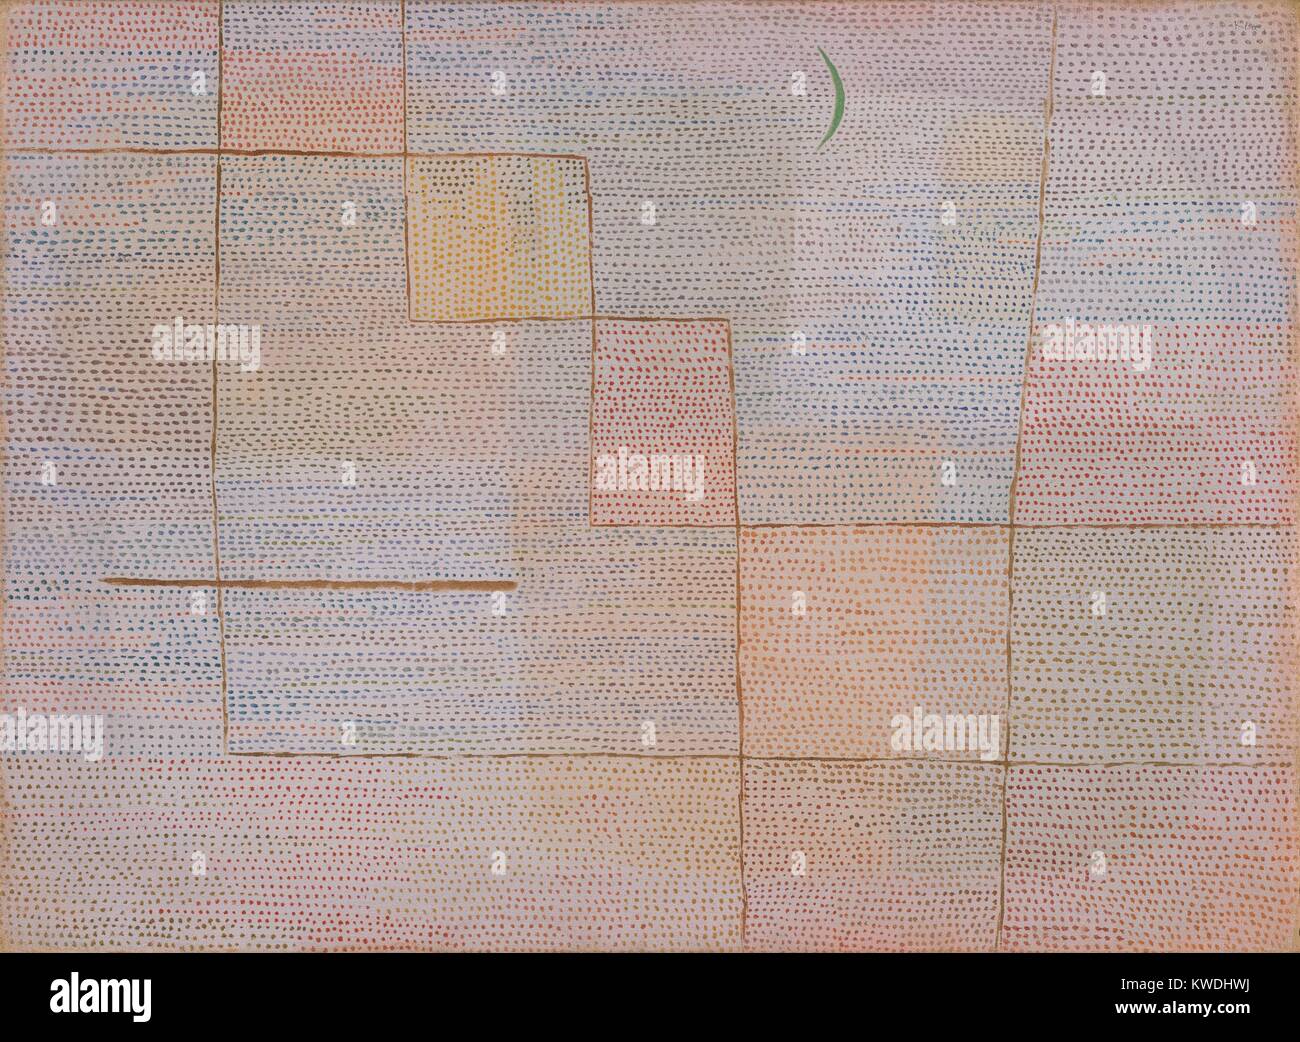 Klärung, von Paul Klee, 1932, Schweizer Malerei, Öl auf Leinwand. Klee unterteilt den Boden in Bereiche der Buff und grau, dann überlagert braune Linien und bedeckten die Oberfläche mit horizontalen Reihen von Tausenden kleinen Farbpunkten. Die grünen Halbmond erinnert an den Mond, zur Gründung eine Spannung zwischen der Abstraktion und diese symbolische gegenständliche Element (BSLOC 2017 7 56) Stockfoto